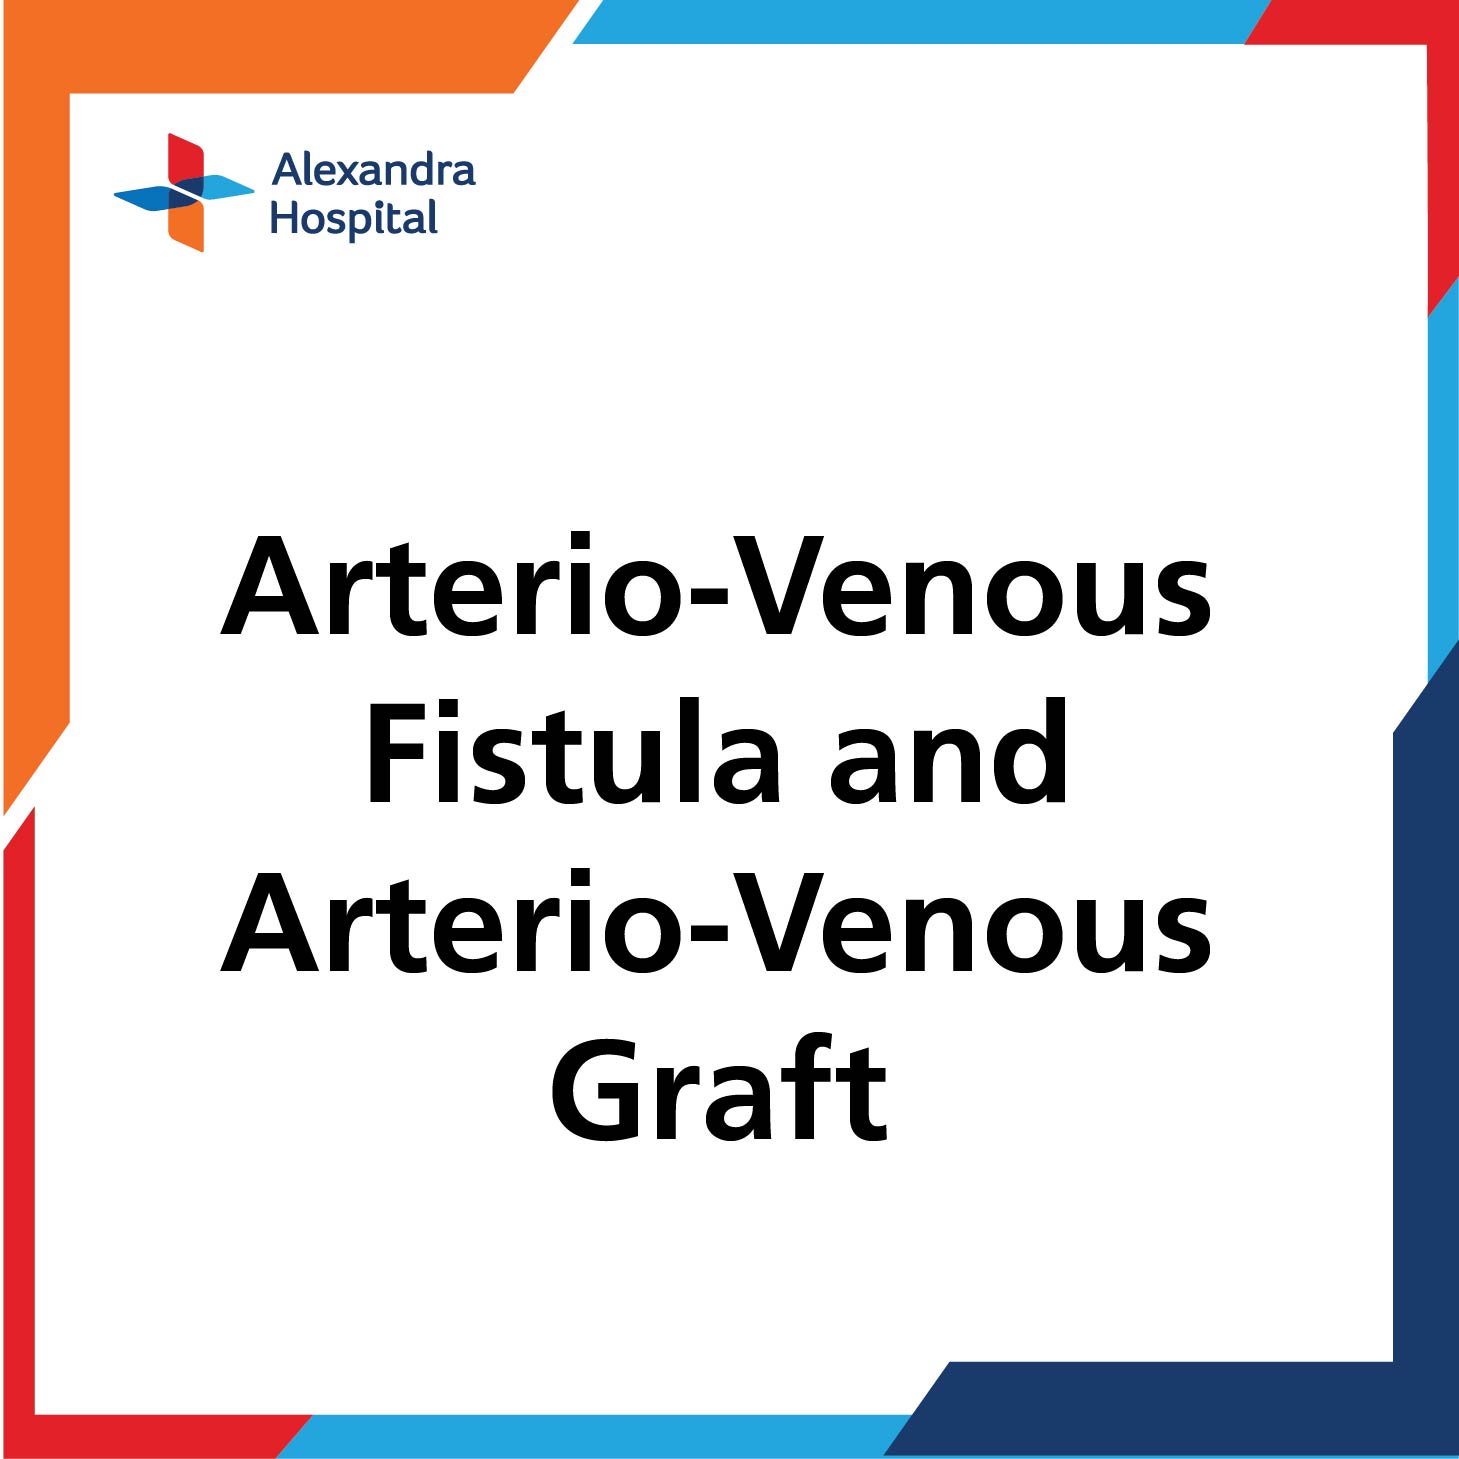 ENDO-Arterio-Venous Fistula and Arterio-Venous Graft